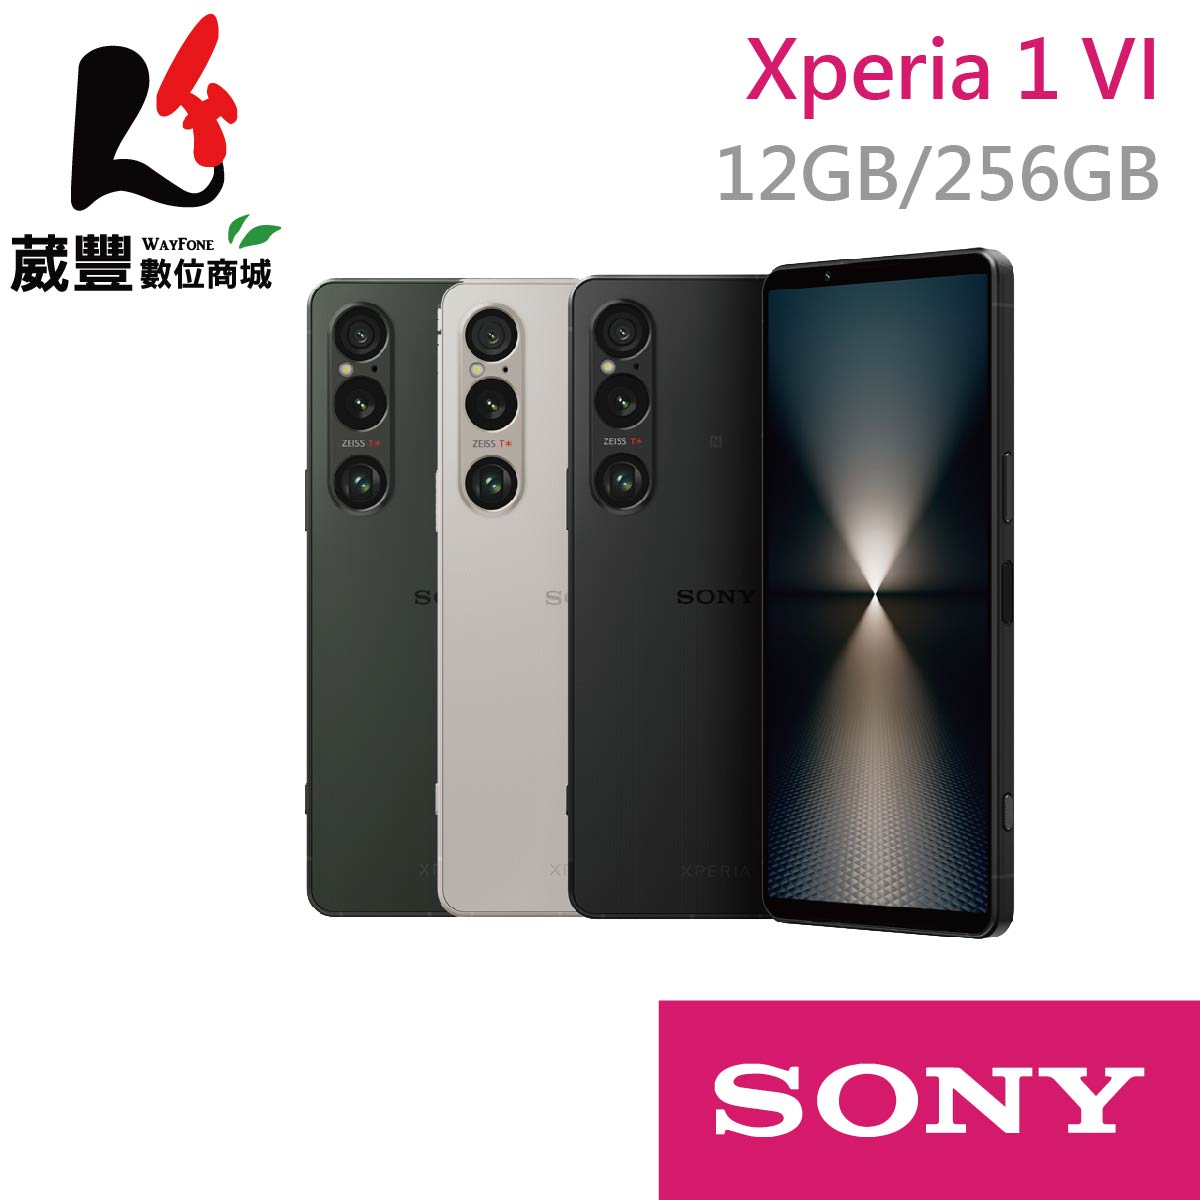 【贈傳輸線+保護殼+手機掛繩】SONY Xperia 1 VI 6.5吋 12G/256G 5G智慧型手機